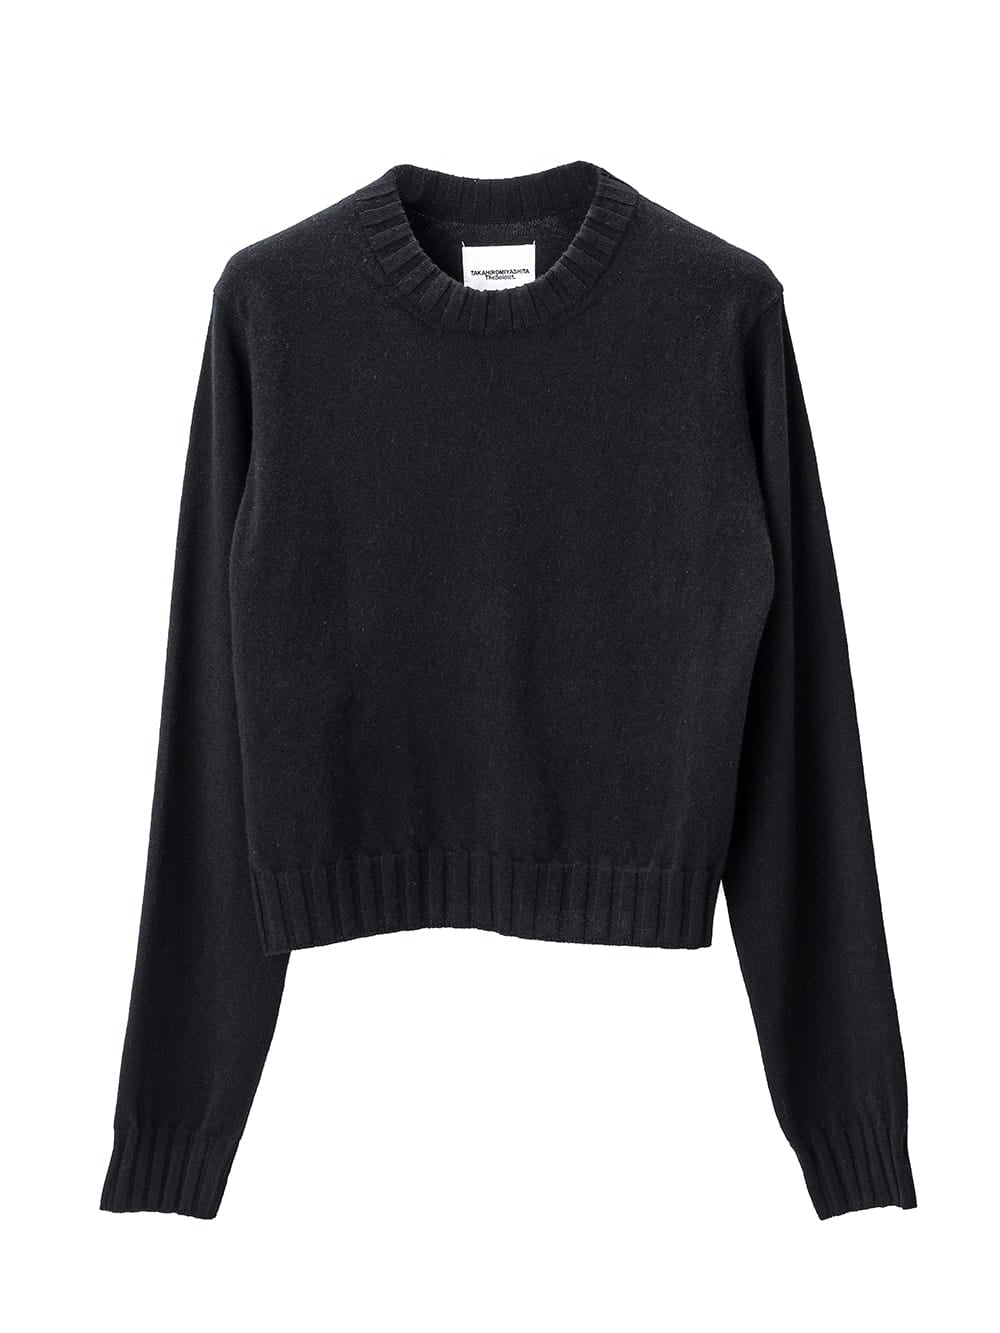 5,599円lambs wool cropped sweater